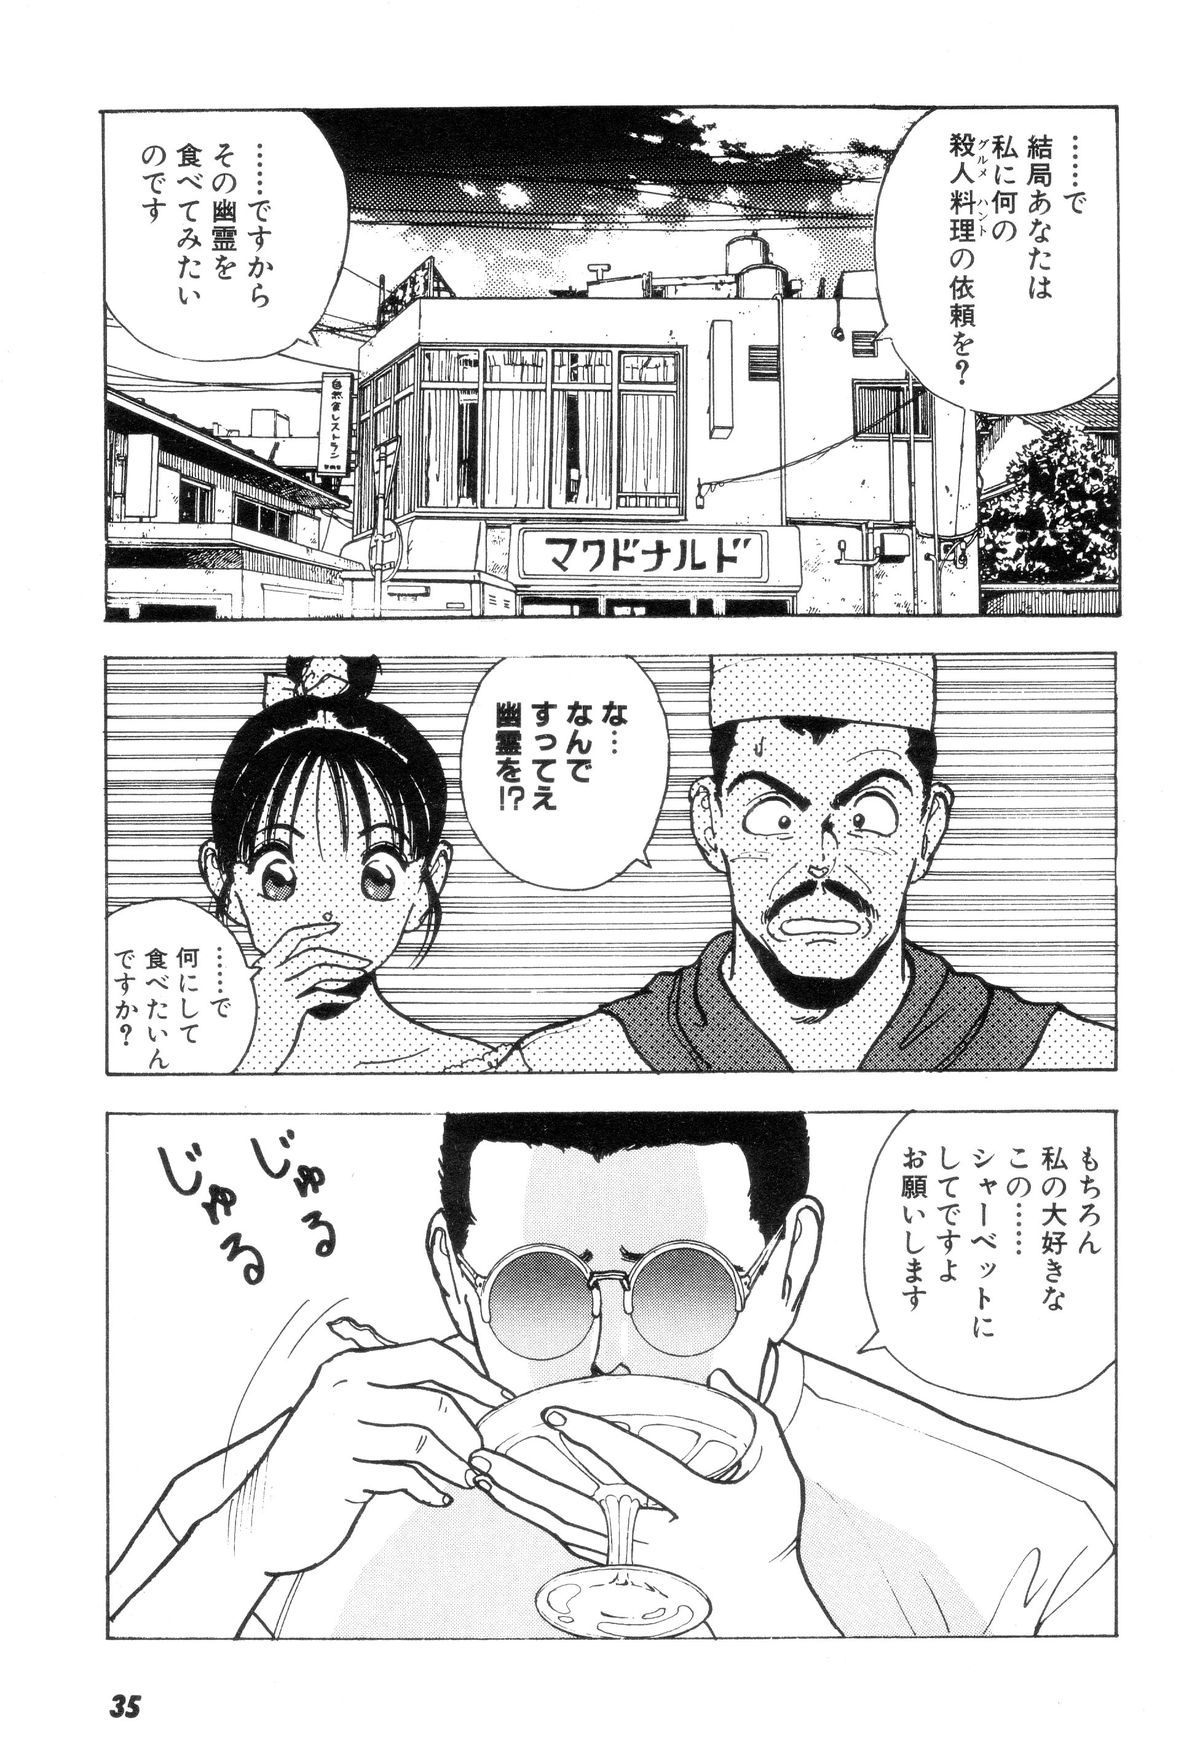 [U-Jin] Nankyoku 28 Gou Vol.02 page 34 full